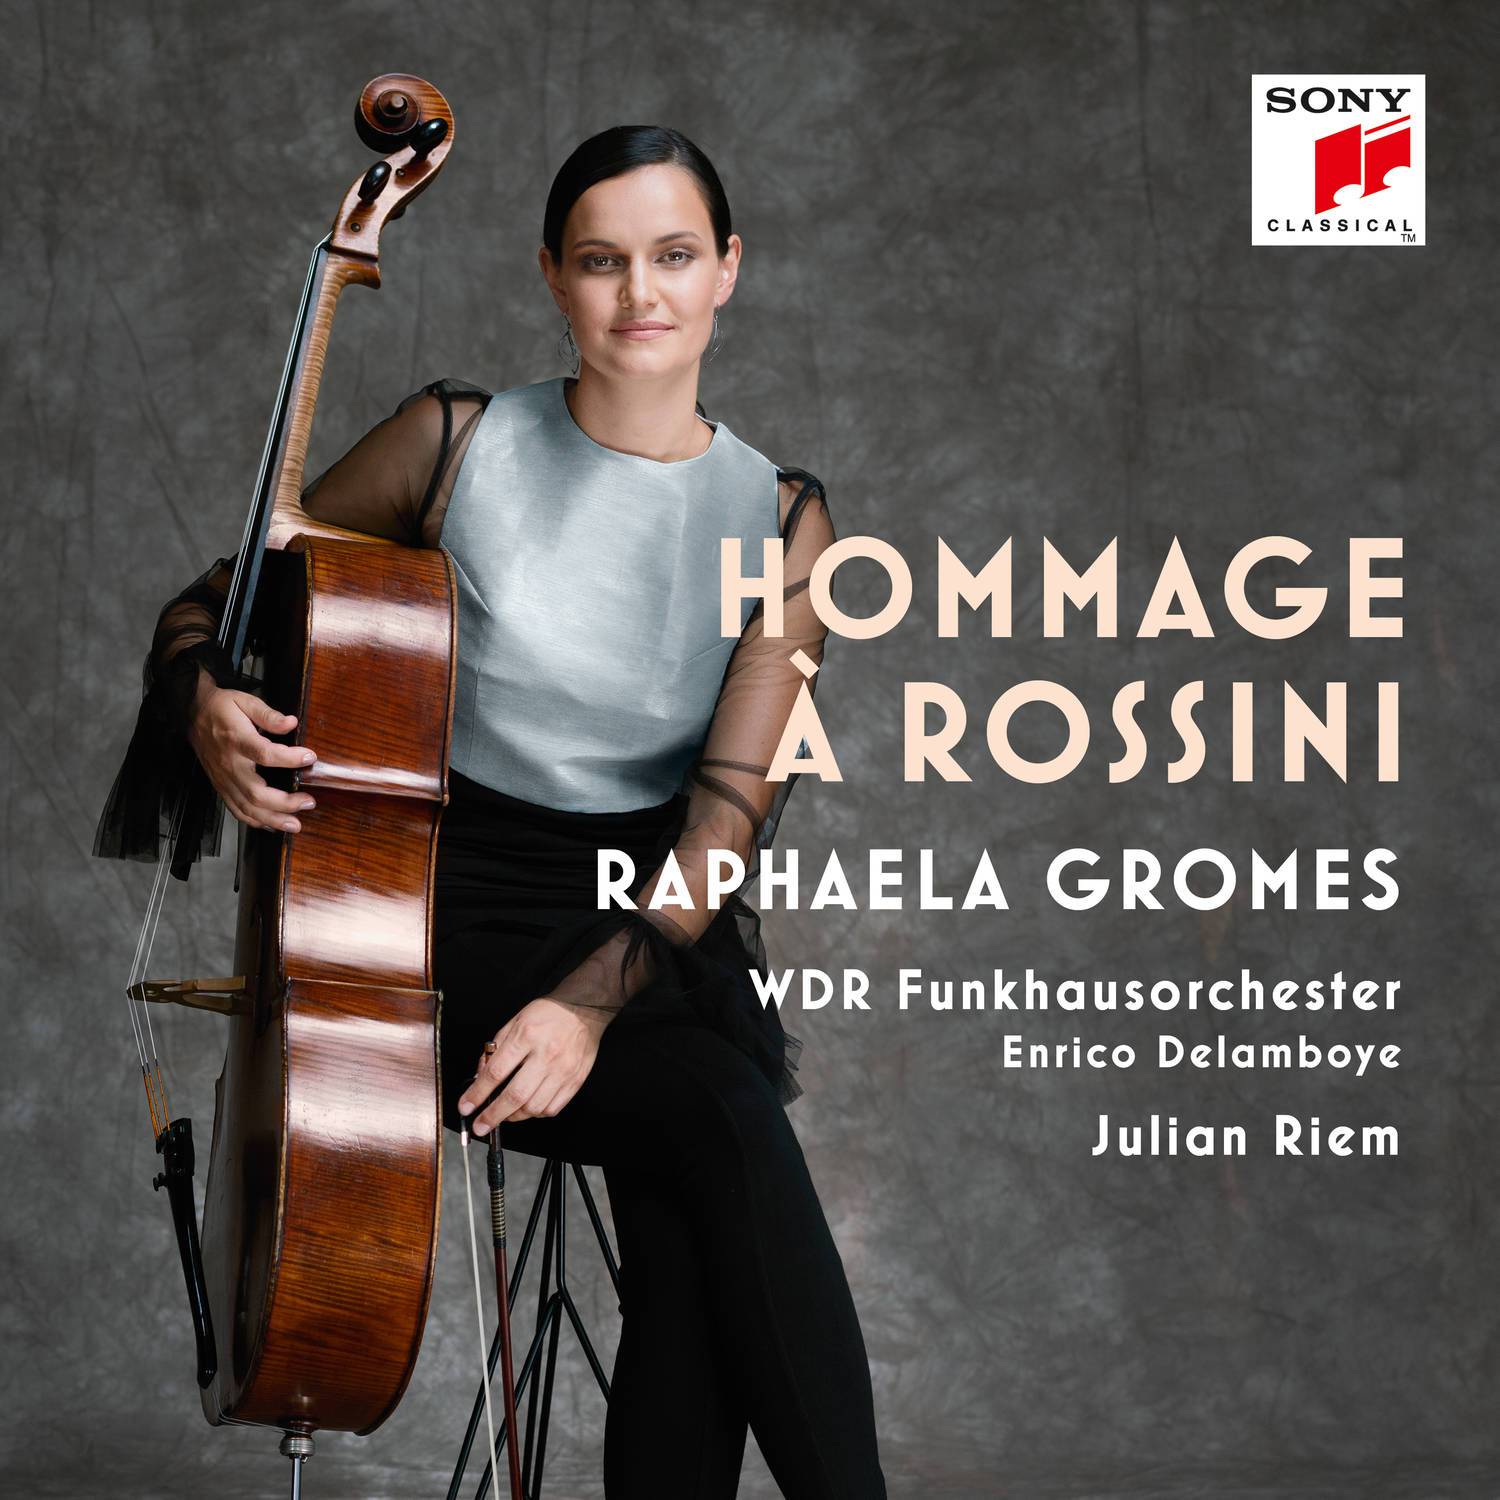 Hommage a Rossini, Fantaisie pour violoncelle et orchestra